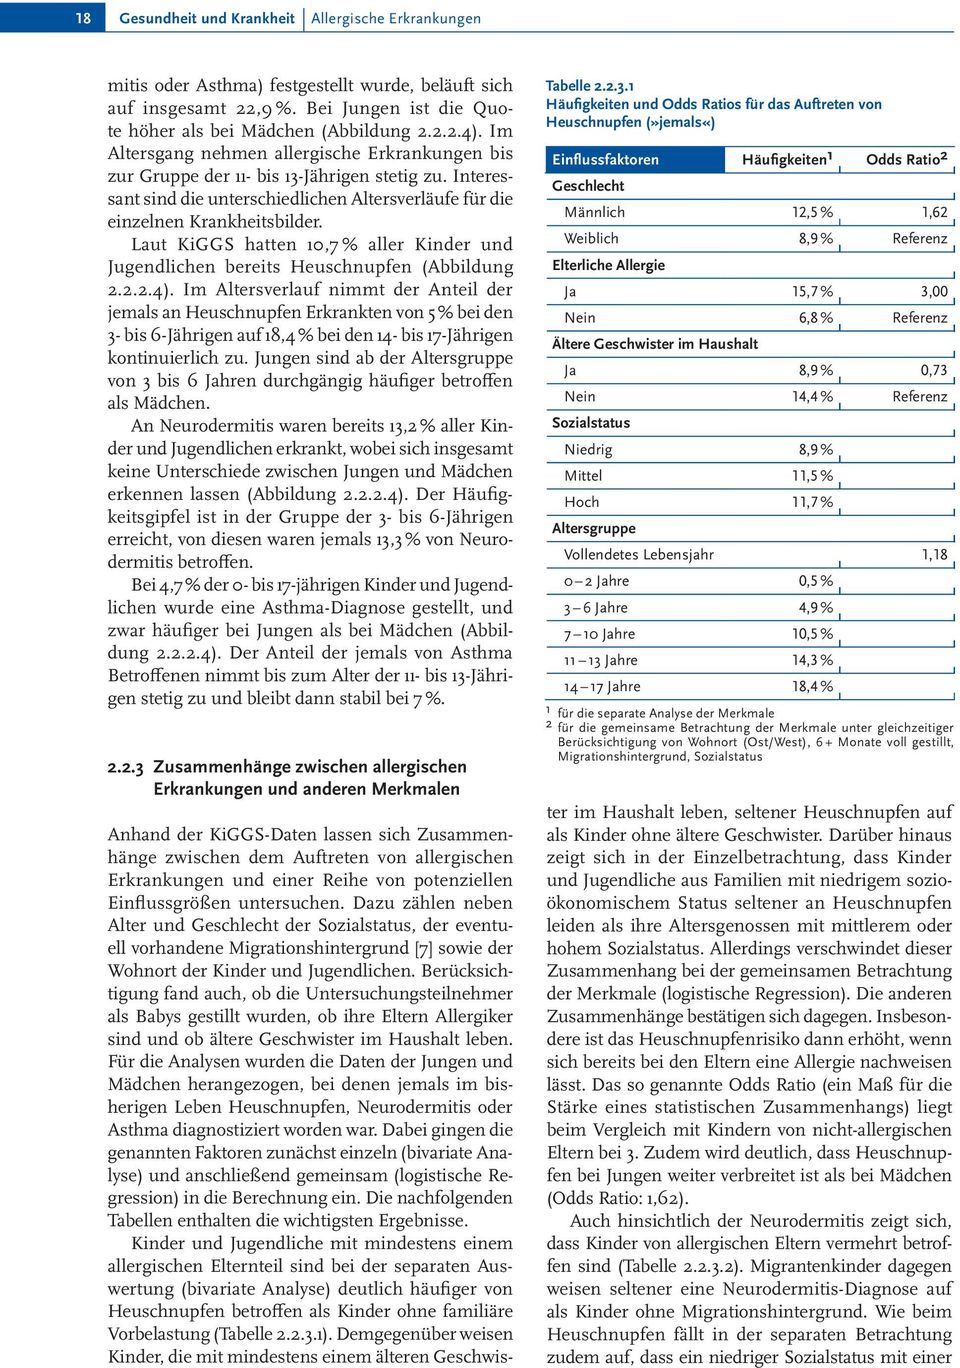 Laut KiGGS hatten 10,7 % aller Kinder und Jugendlichen bereits Heuschnupfen (Abbildung 2.2.2.4).